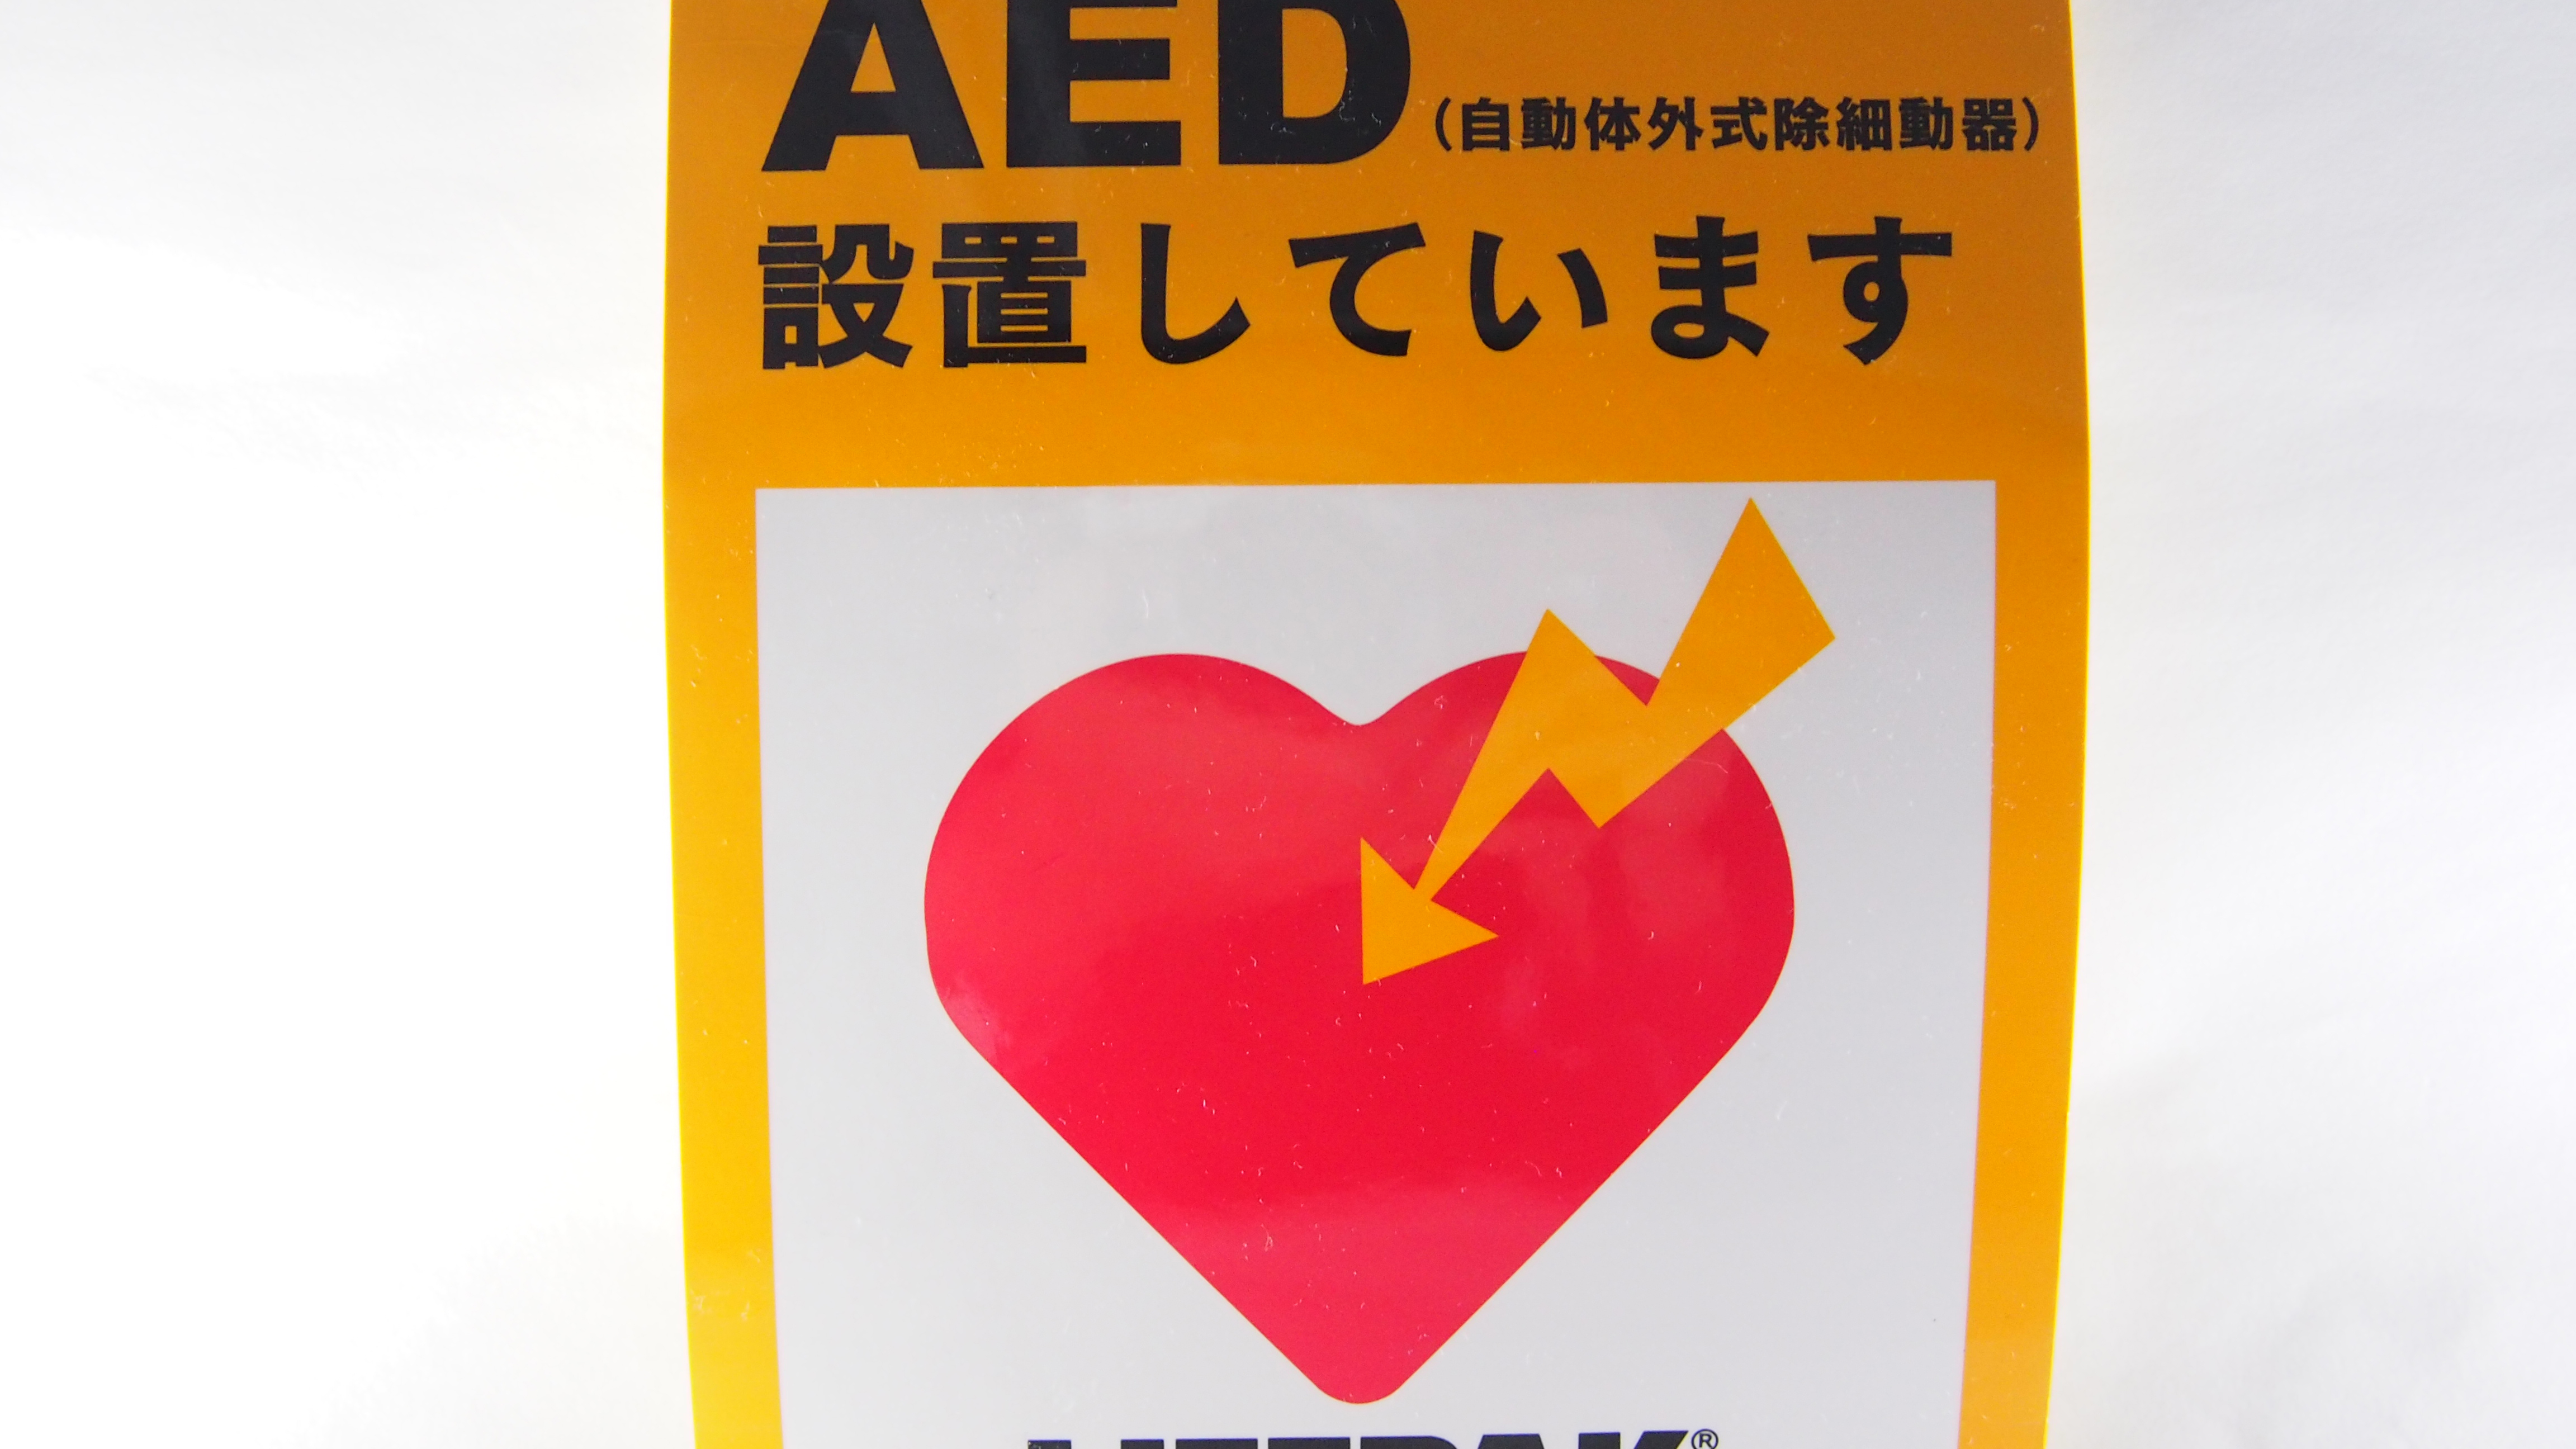 AEDを設置しております。